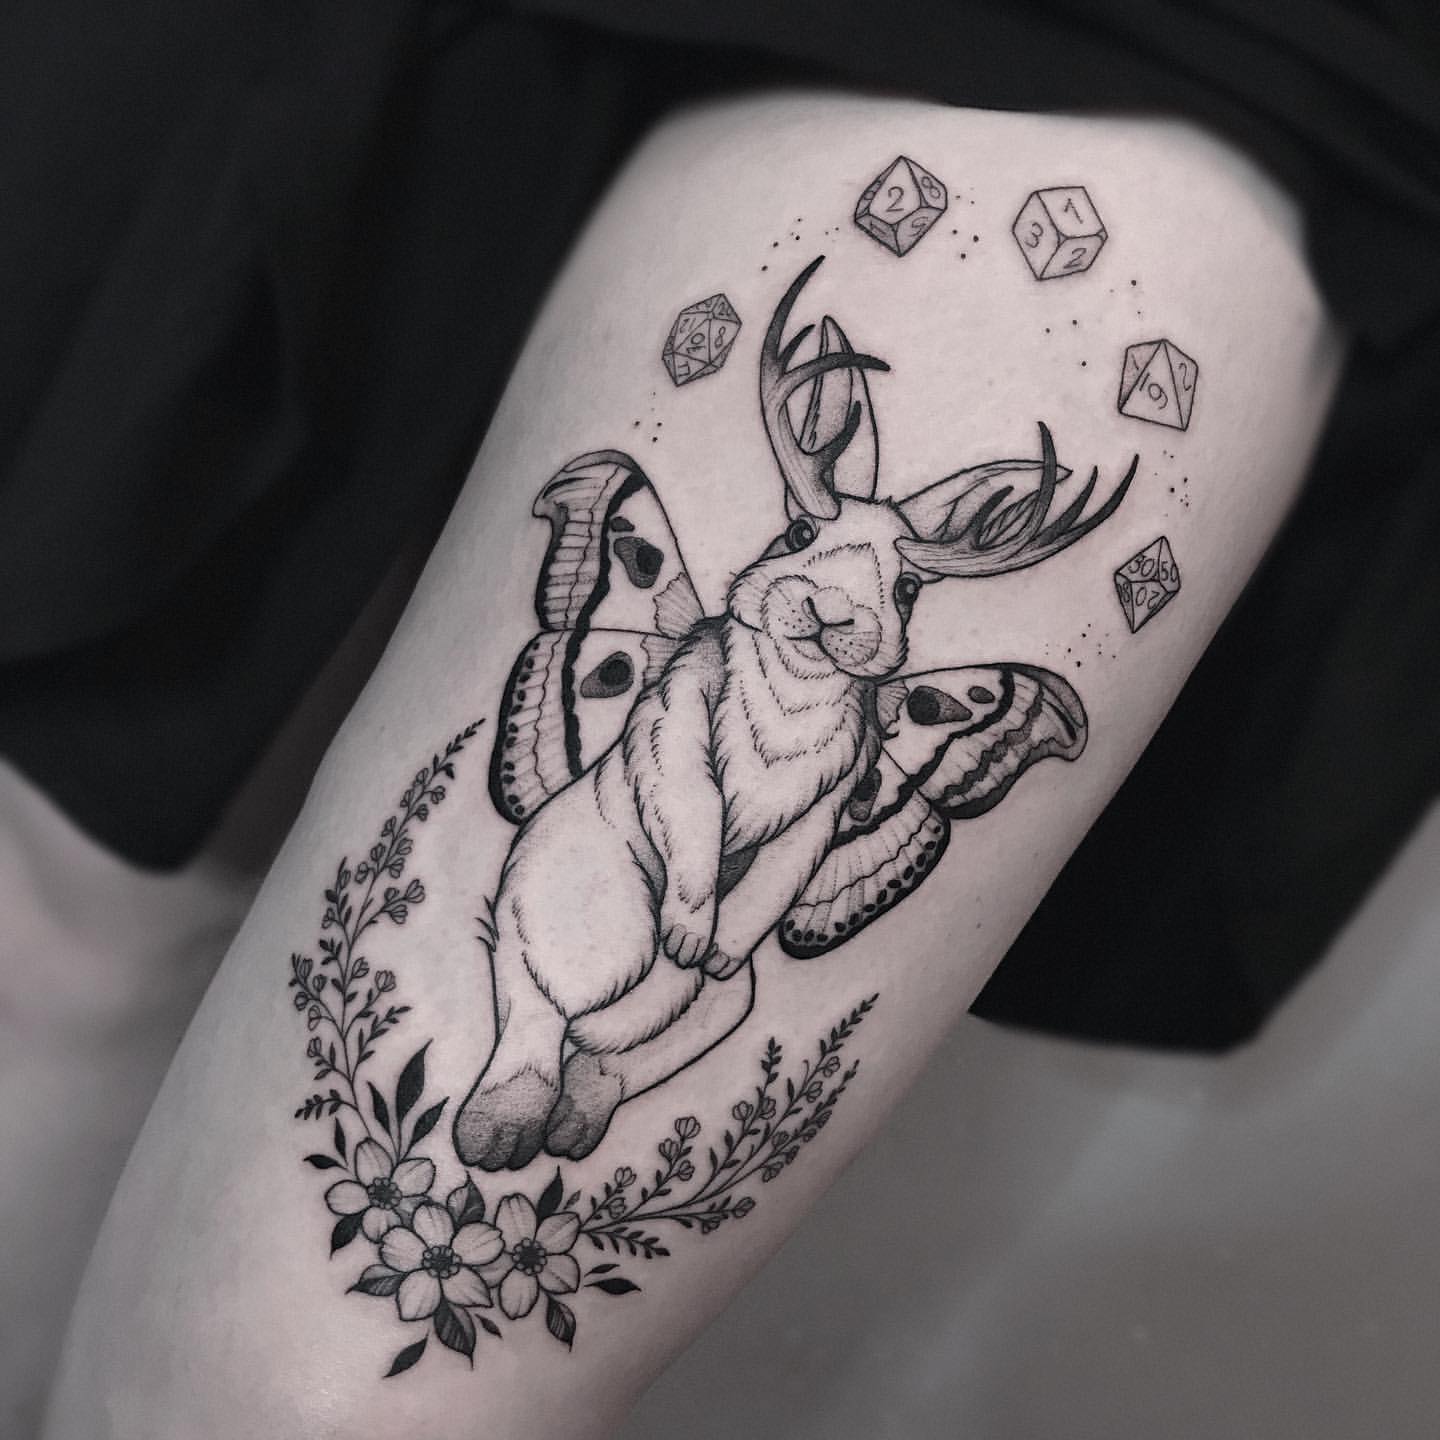 Rabbit Tattoo Ideas 23